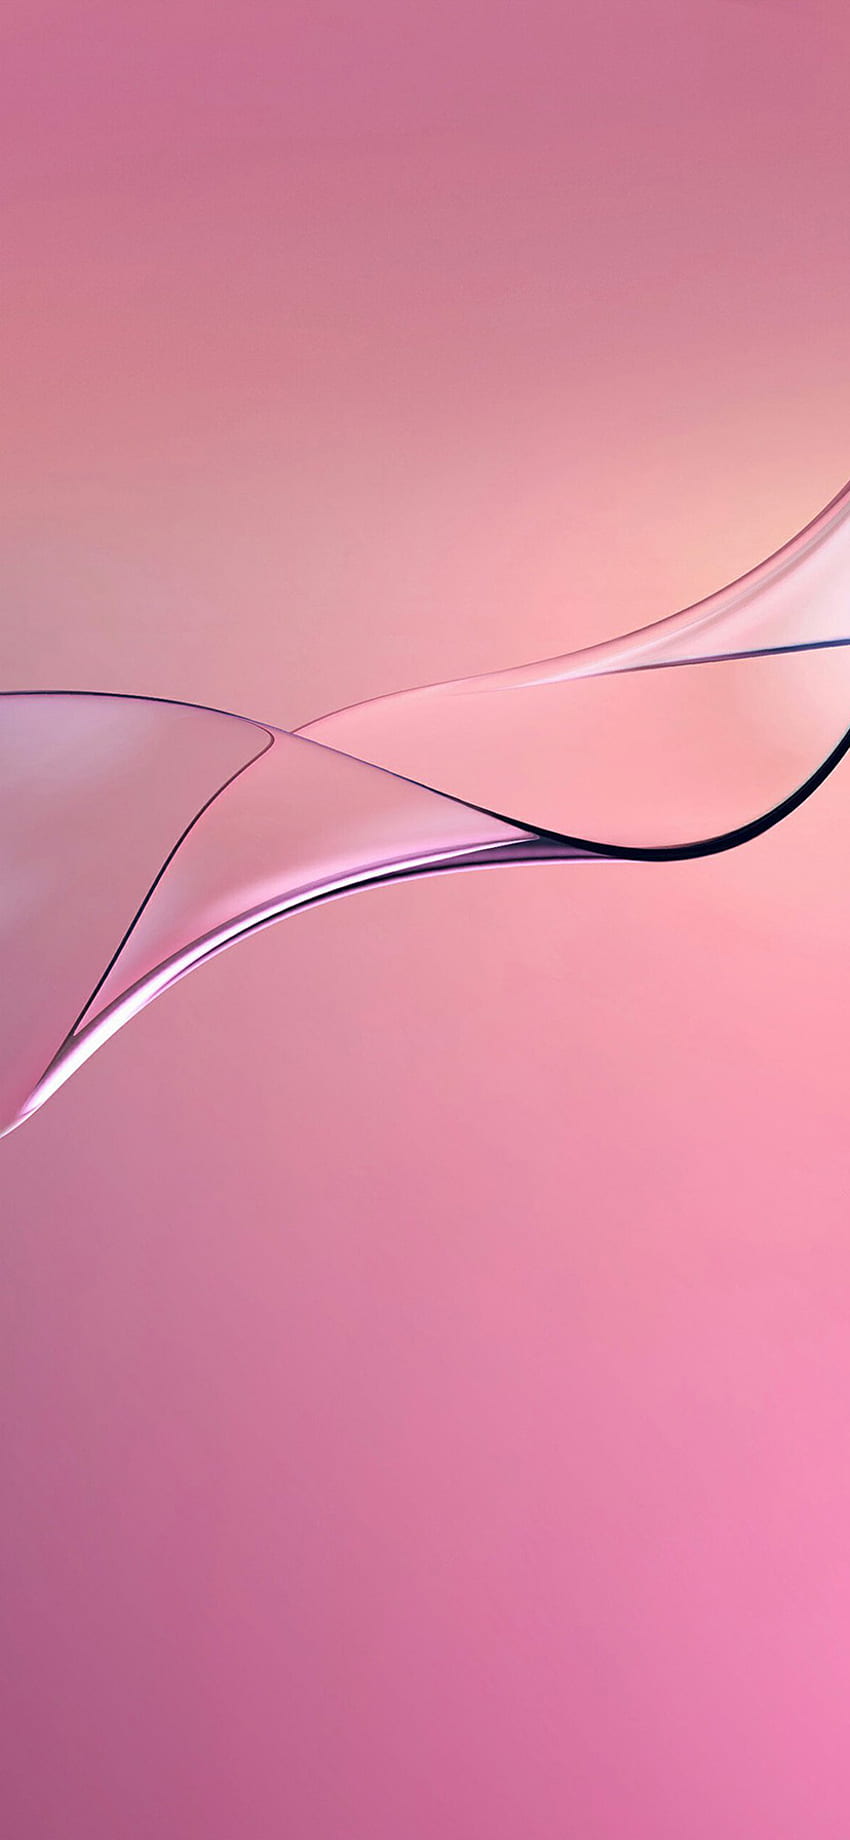 iPhone XR untuk desain kabur abstrak berwarna merah jambu wallpaper ponsel HD